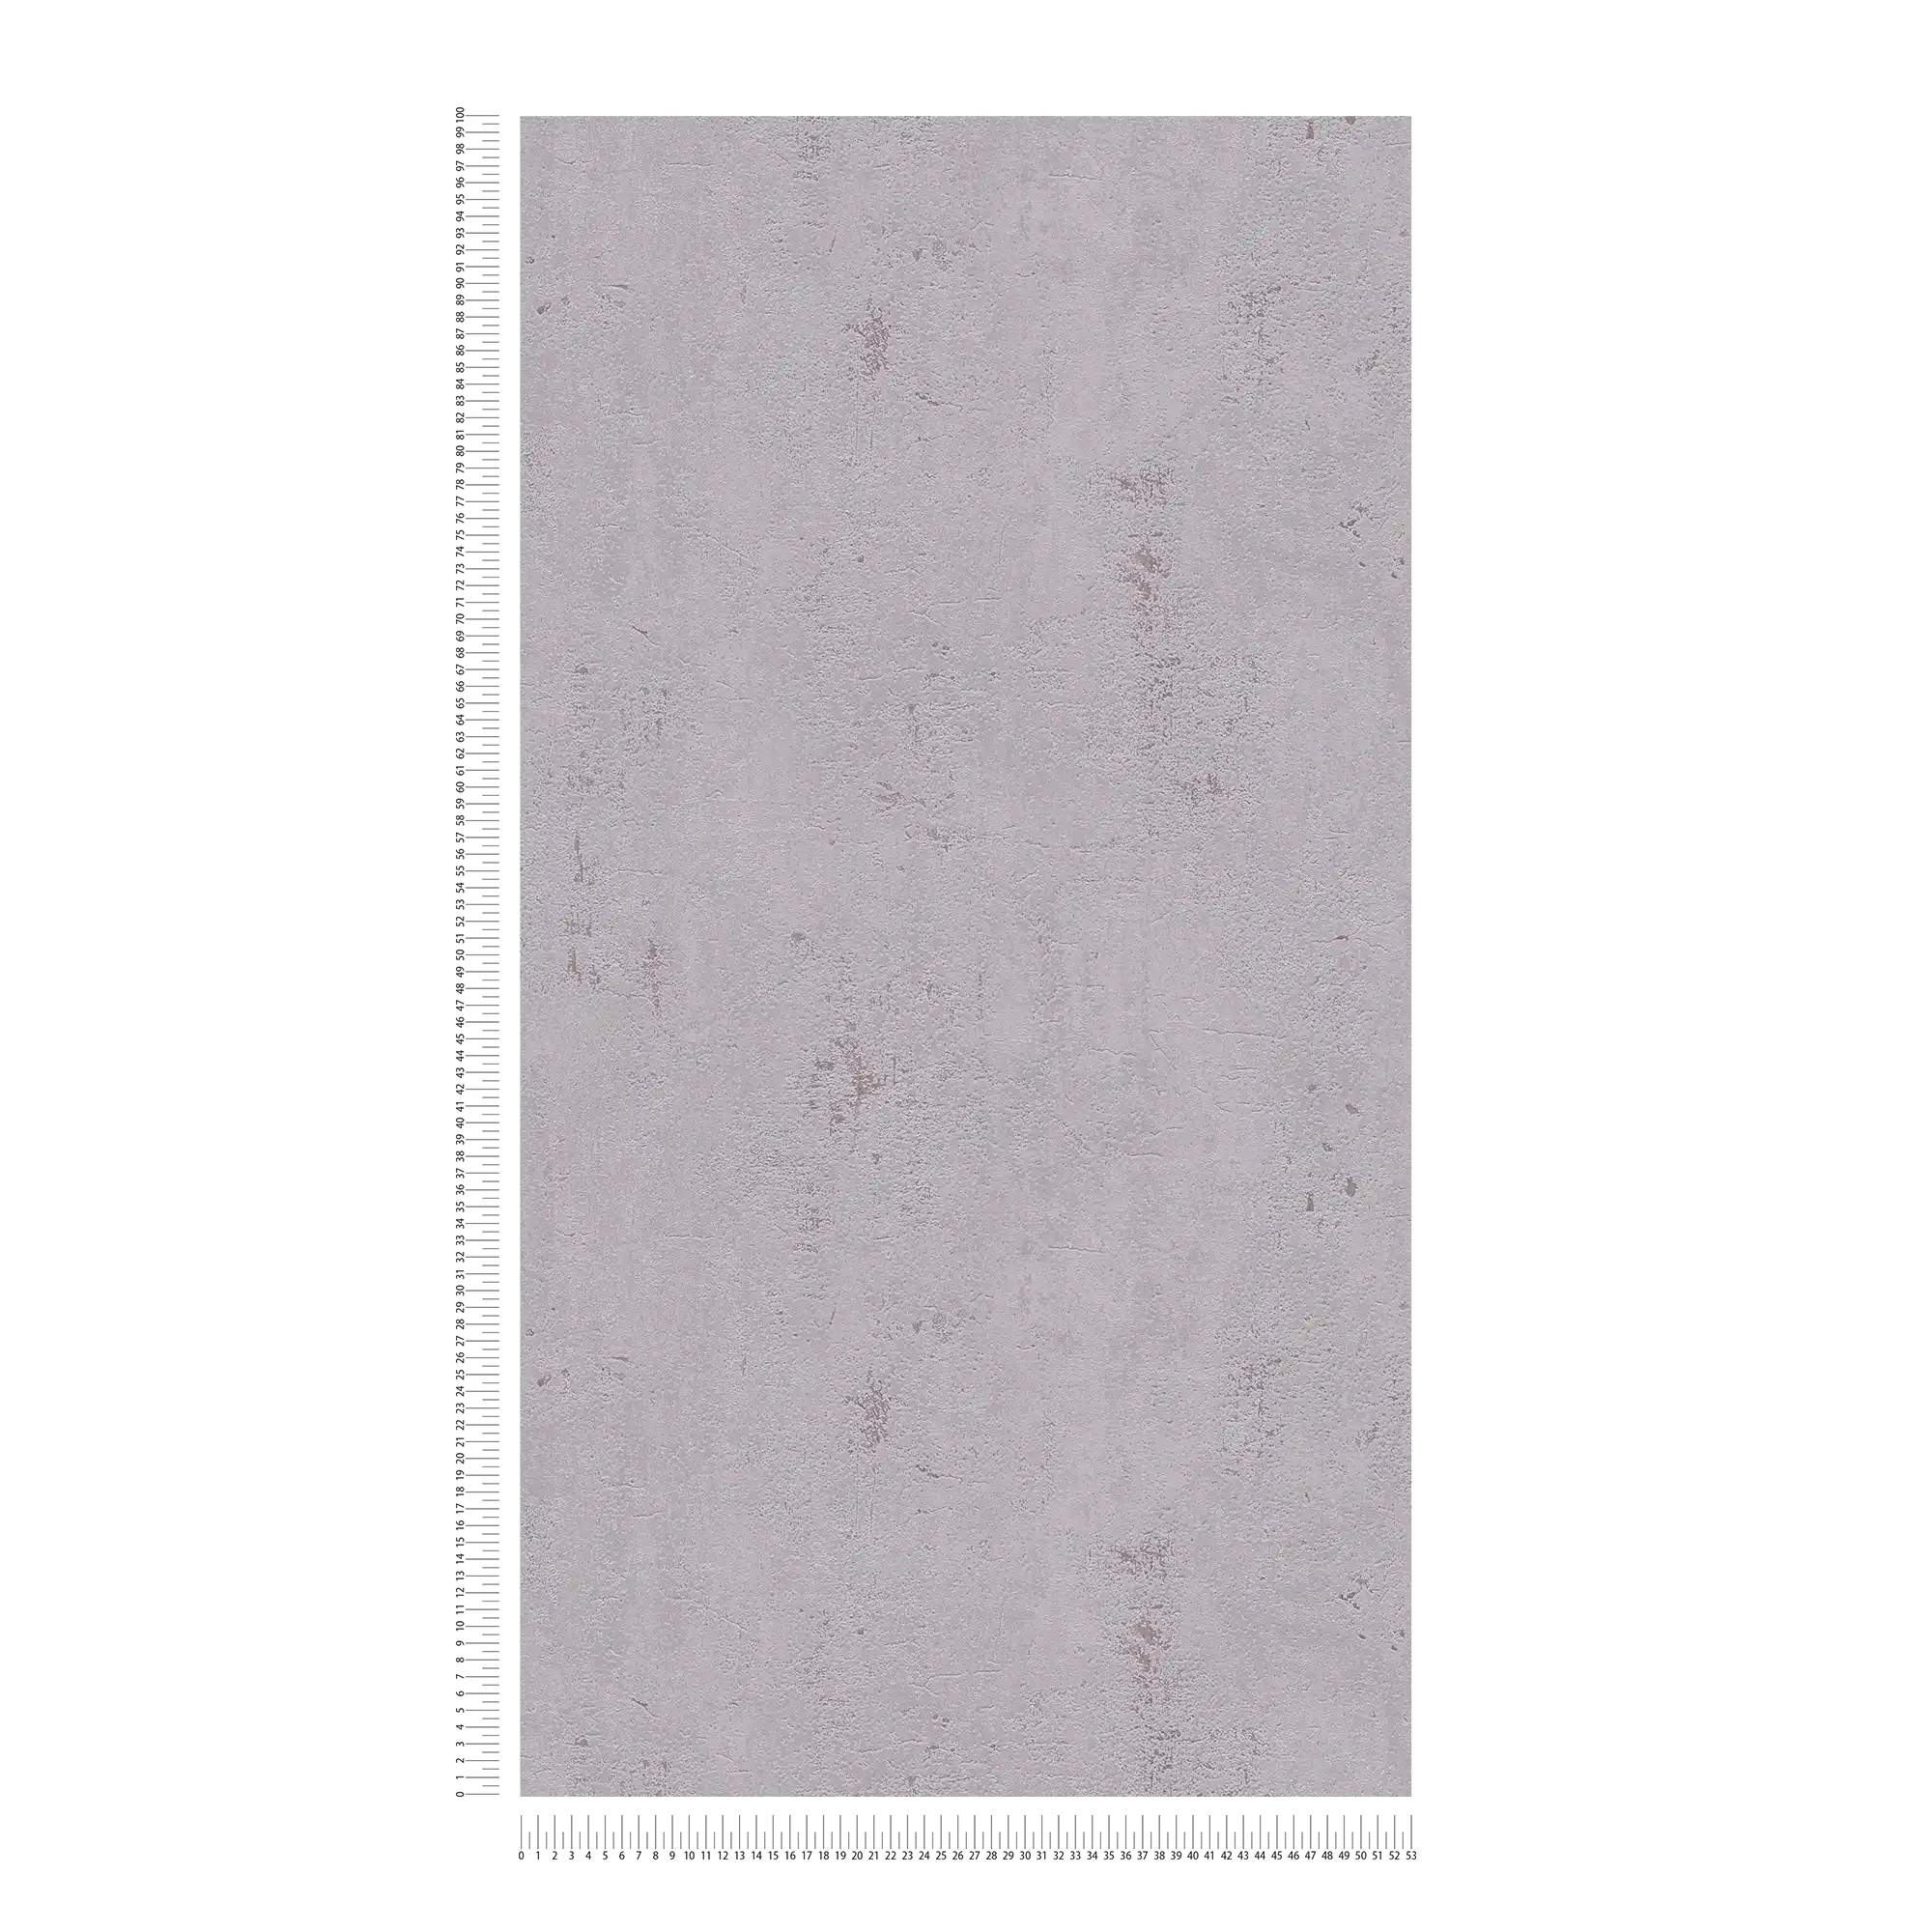             Papel pintado gris con aspecto de yeso en diseño industrial - marrón, gris
        